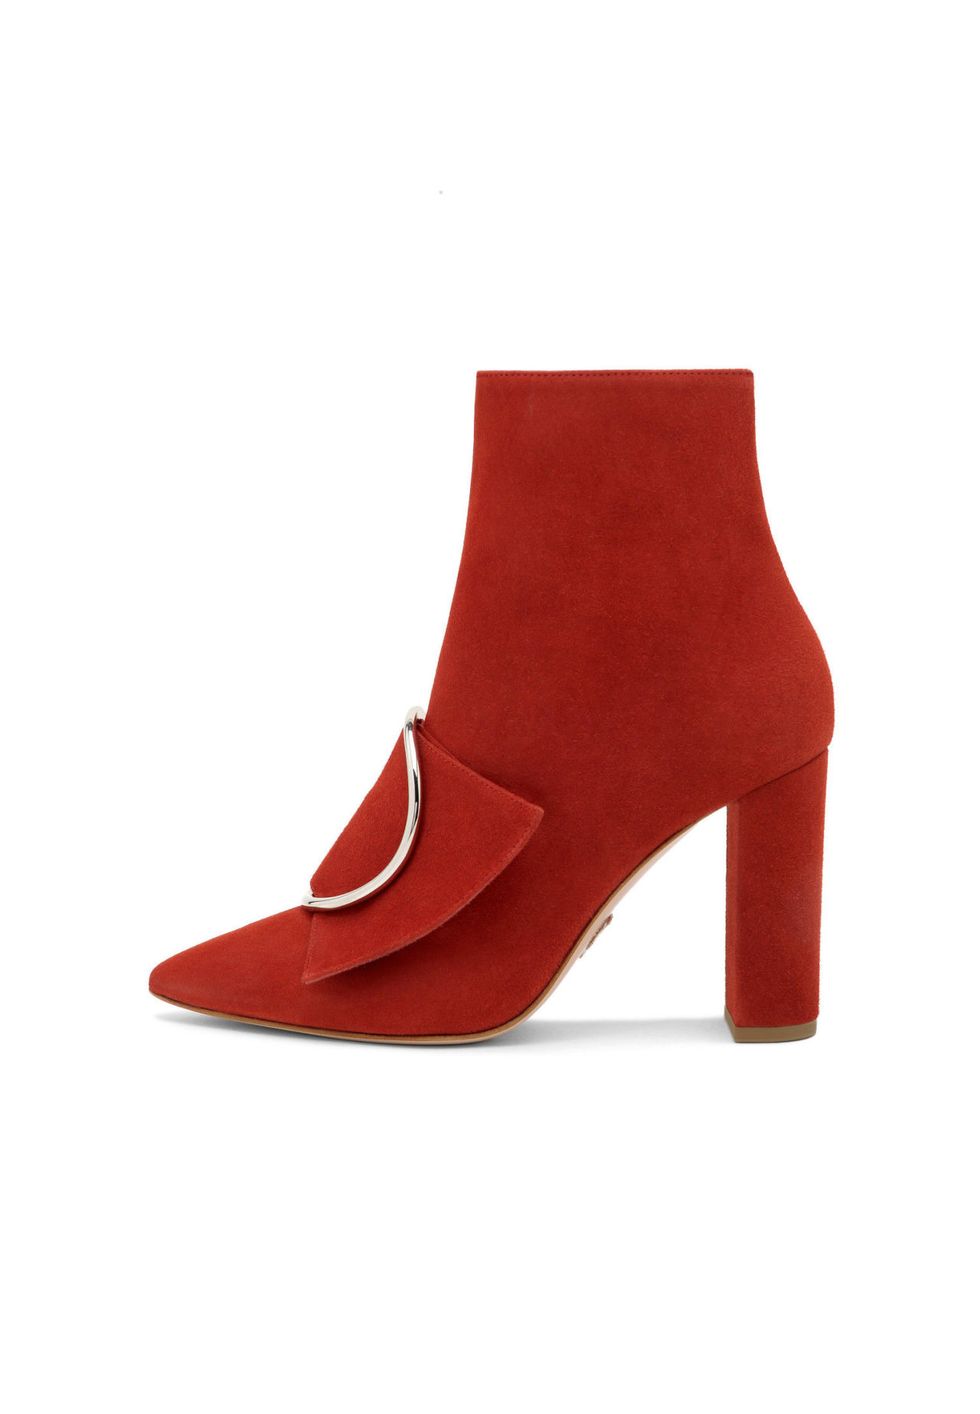 scarpe alte rosse moda 2018 come lo stivaletto di Oscar Tiye